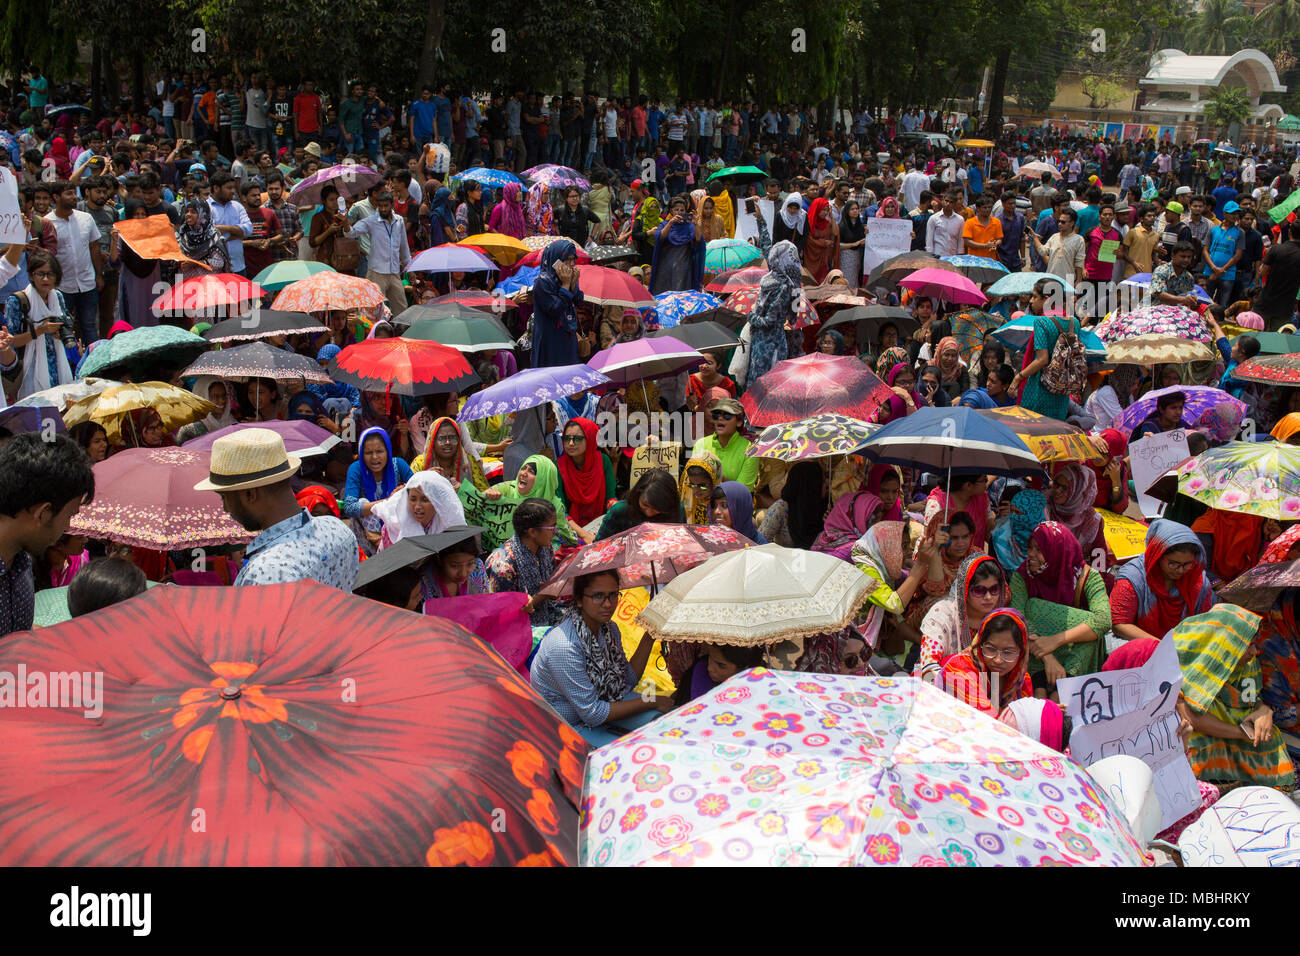 DHAKA, BANGLADESCH - 11. April: Bengalische Studenten für einen Protest gegen die Quoten für bestimmte Gruppen von Menschen in der Regierung Arbeitsplätze in Dhaka, Bangladesch, das am 11. April 2018 sammeln. Zehntausende Studenten demonstrierten in den Städten in Bangladesch am 11. April in einem der größten Proteste von Premierministerin Sheikh Hasina in ihren zehn Jahren an der Macht konfrontiert. Studenten gegen eine umstrittene Richtlinie, legt Regierung Jobs für spezielle Gruppen Massenprotesten selten in einem solchen Umfang in Bangladesch gesehen haben zu kämpfen. Credit: zakir Hossain chowdhury Zakir/Alamy leben Nachrichten Stockfoto